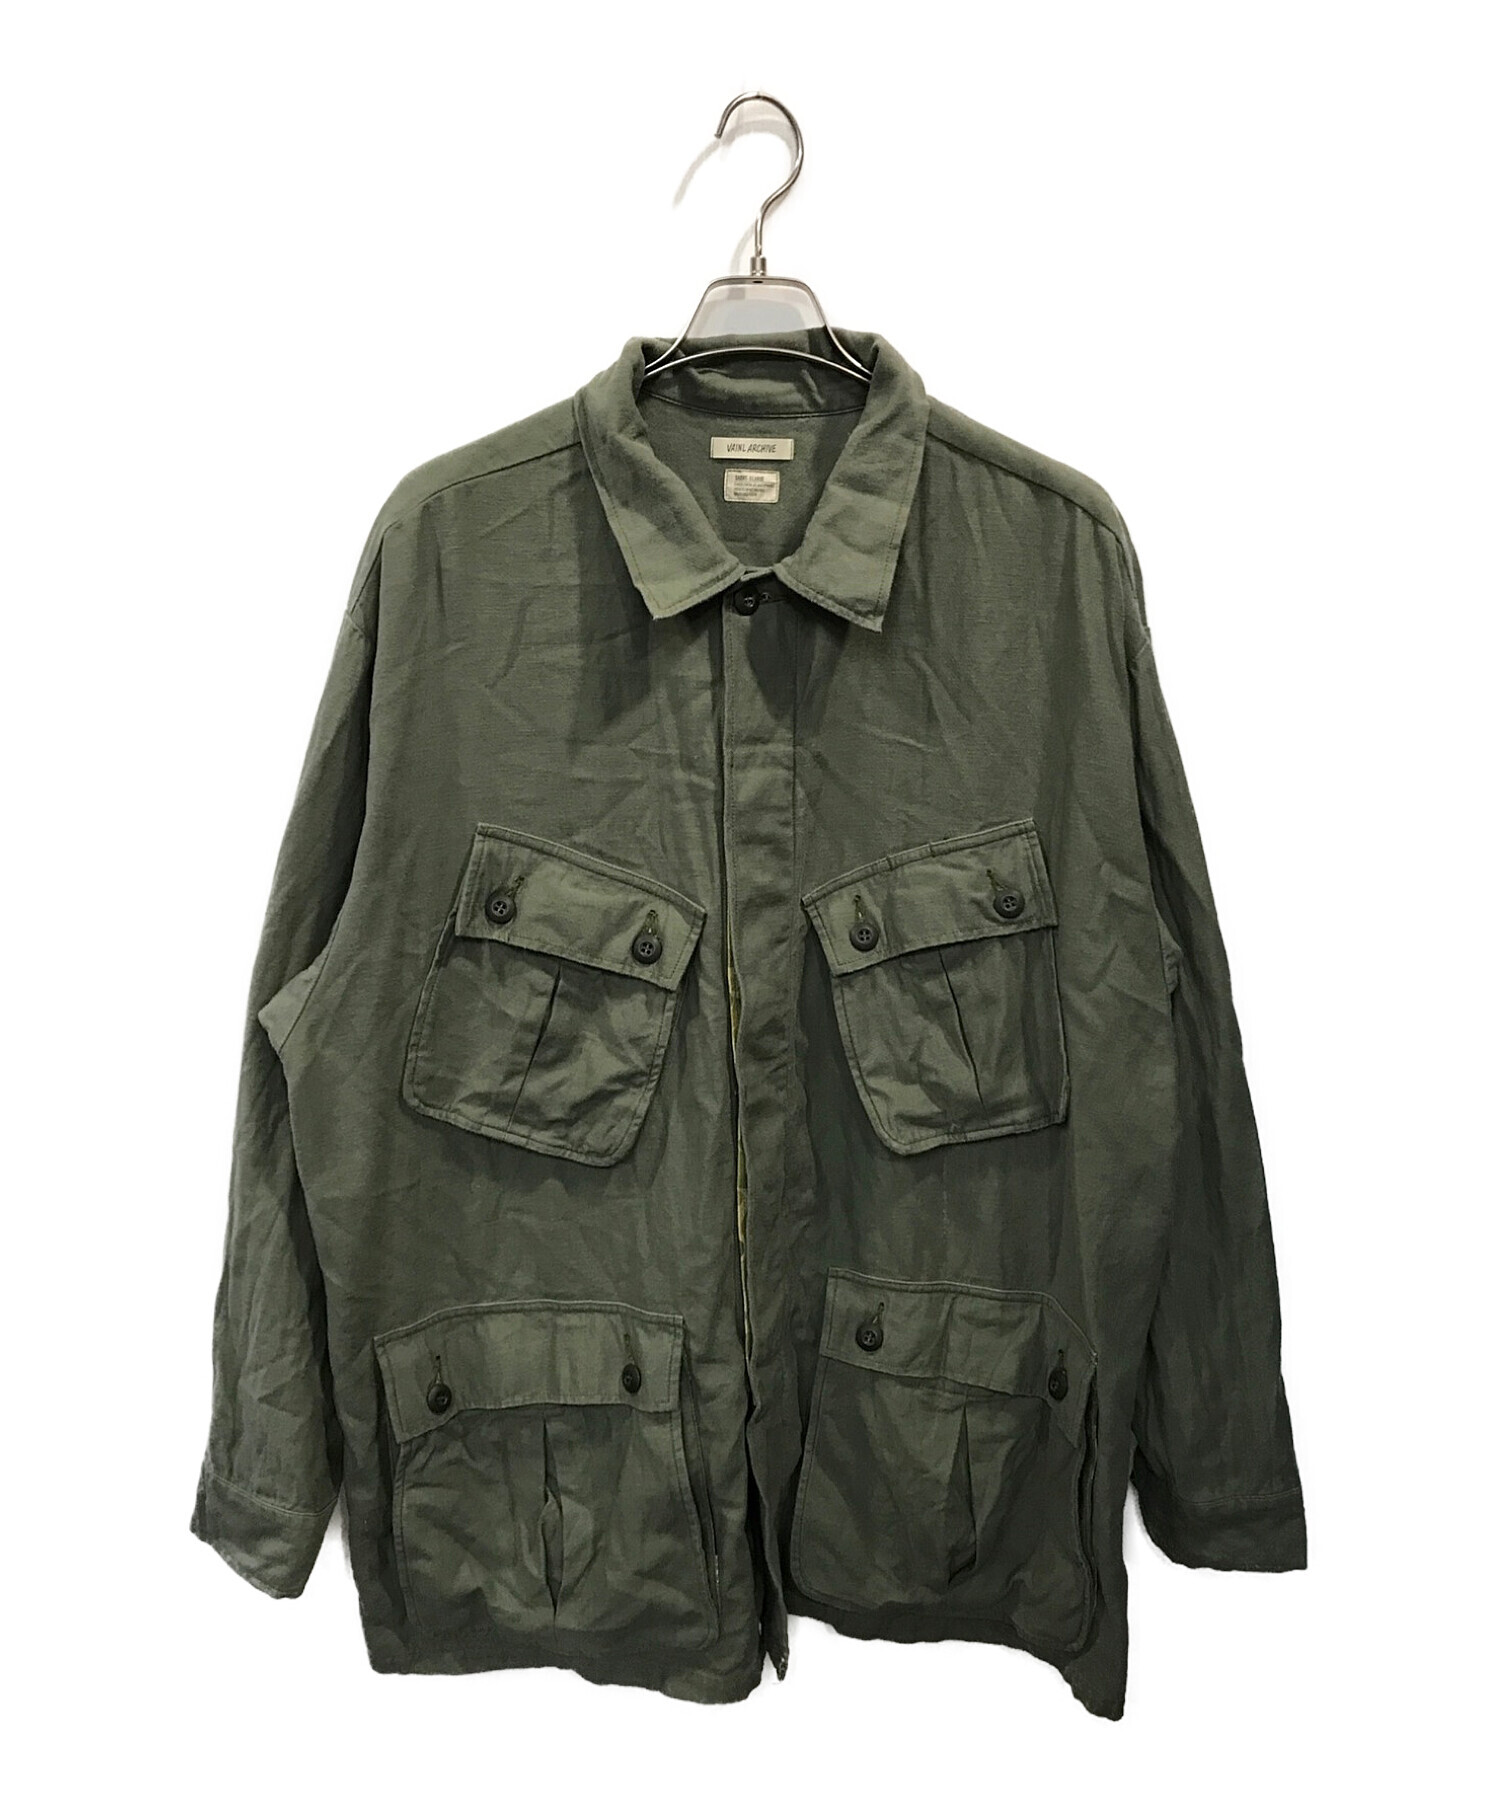 VAINL ARCHIVE (ヴァイナルアーカイブ) Buzz Rickson's (バズリクソンズ) BEAMS JAPAN (ビームスジャパン)  Fatigue Jacket カーキ サイズ:XL